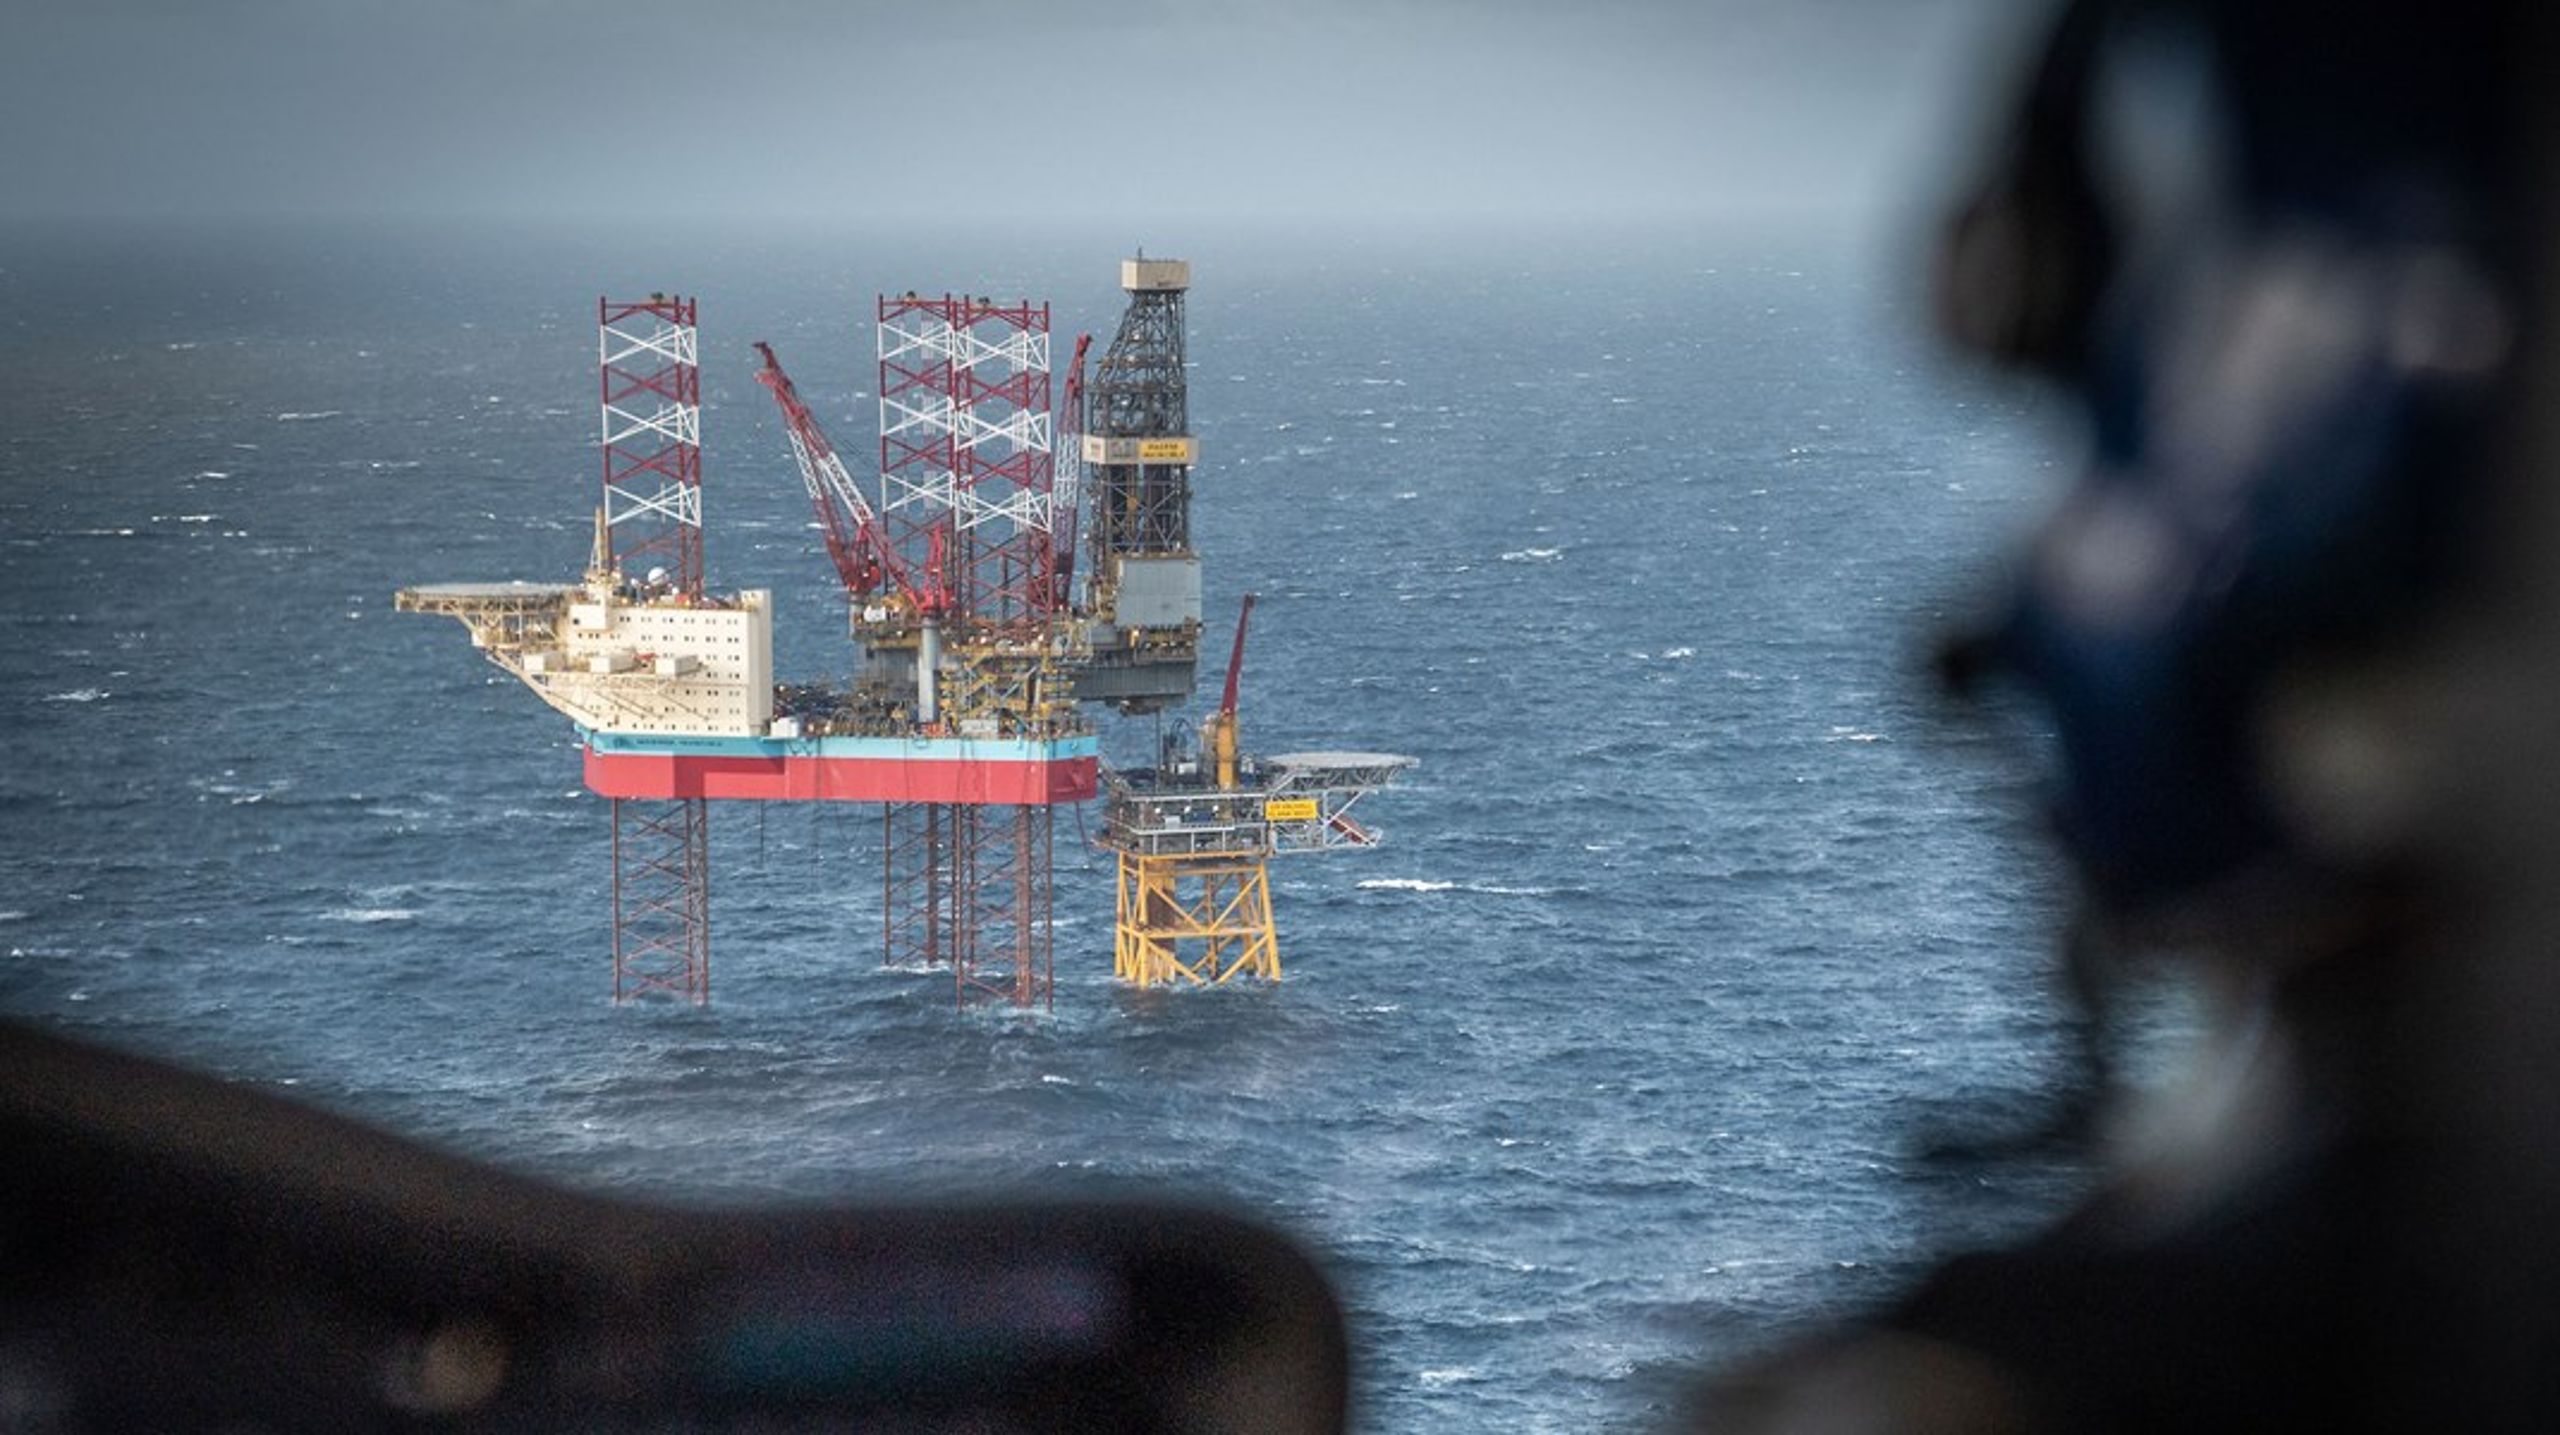 Udtjente olie- og gaslagre i Nordsøen skal bruges til at lagre CO2, hvis det står til regeringen. Miljøorganisationer er skeptiske.